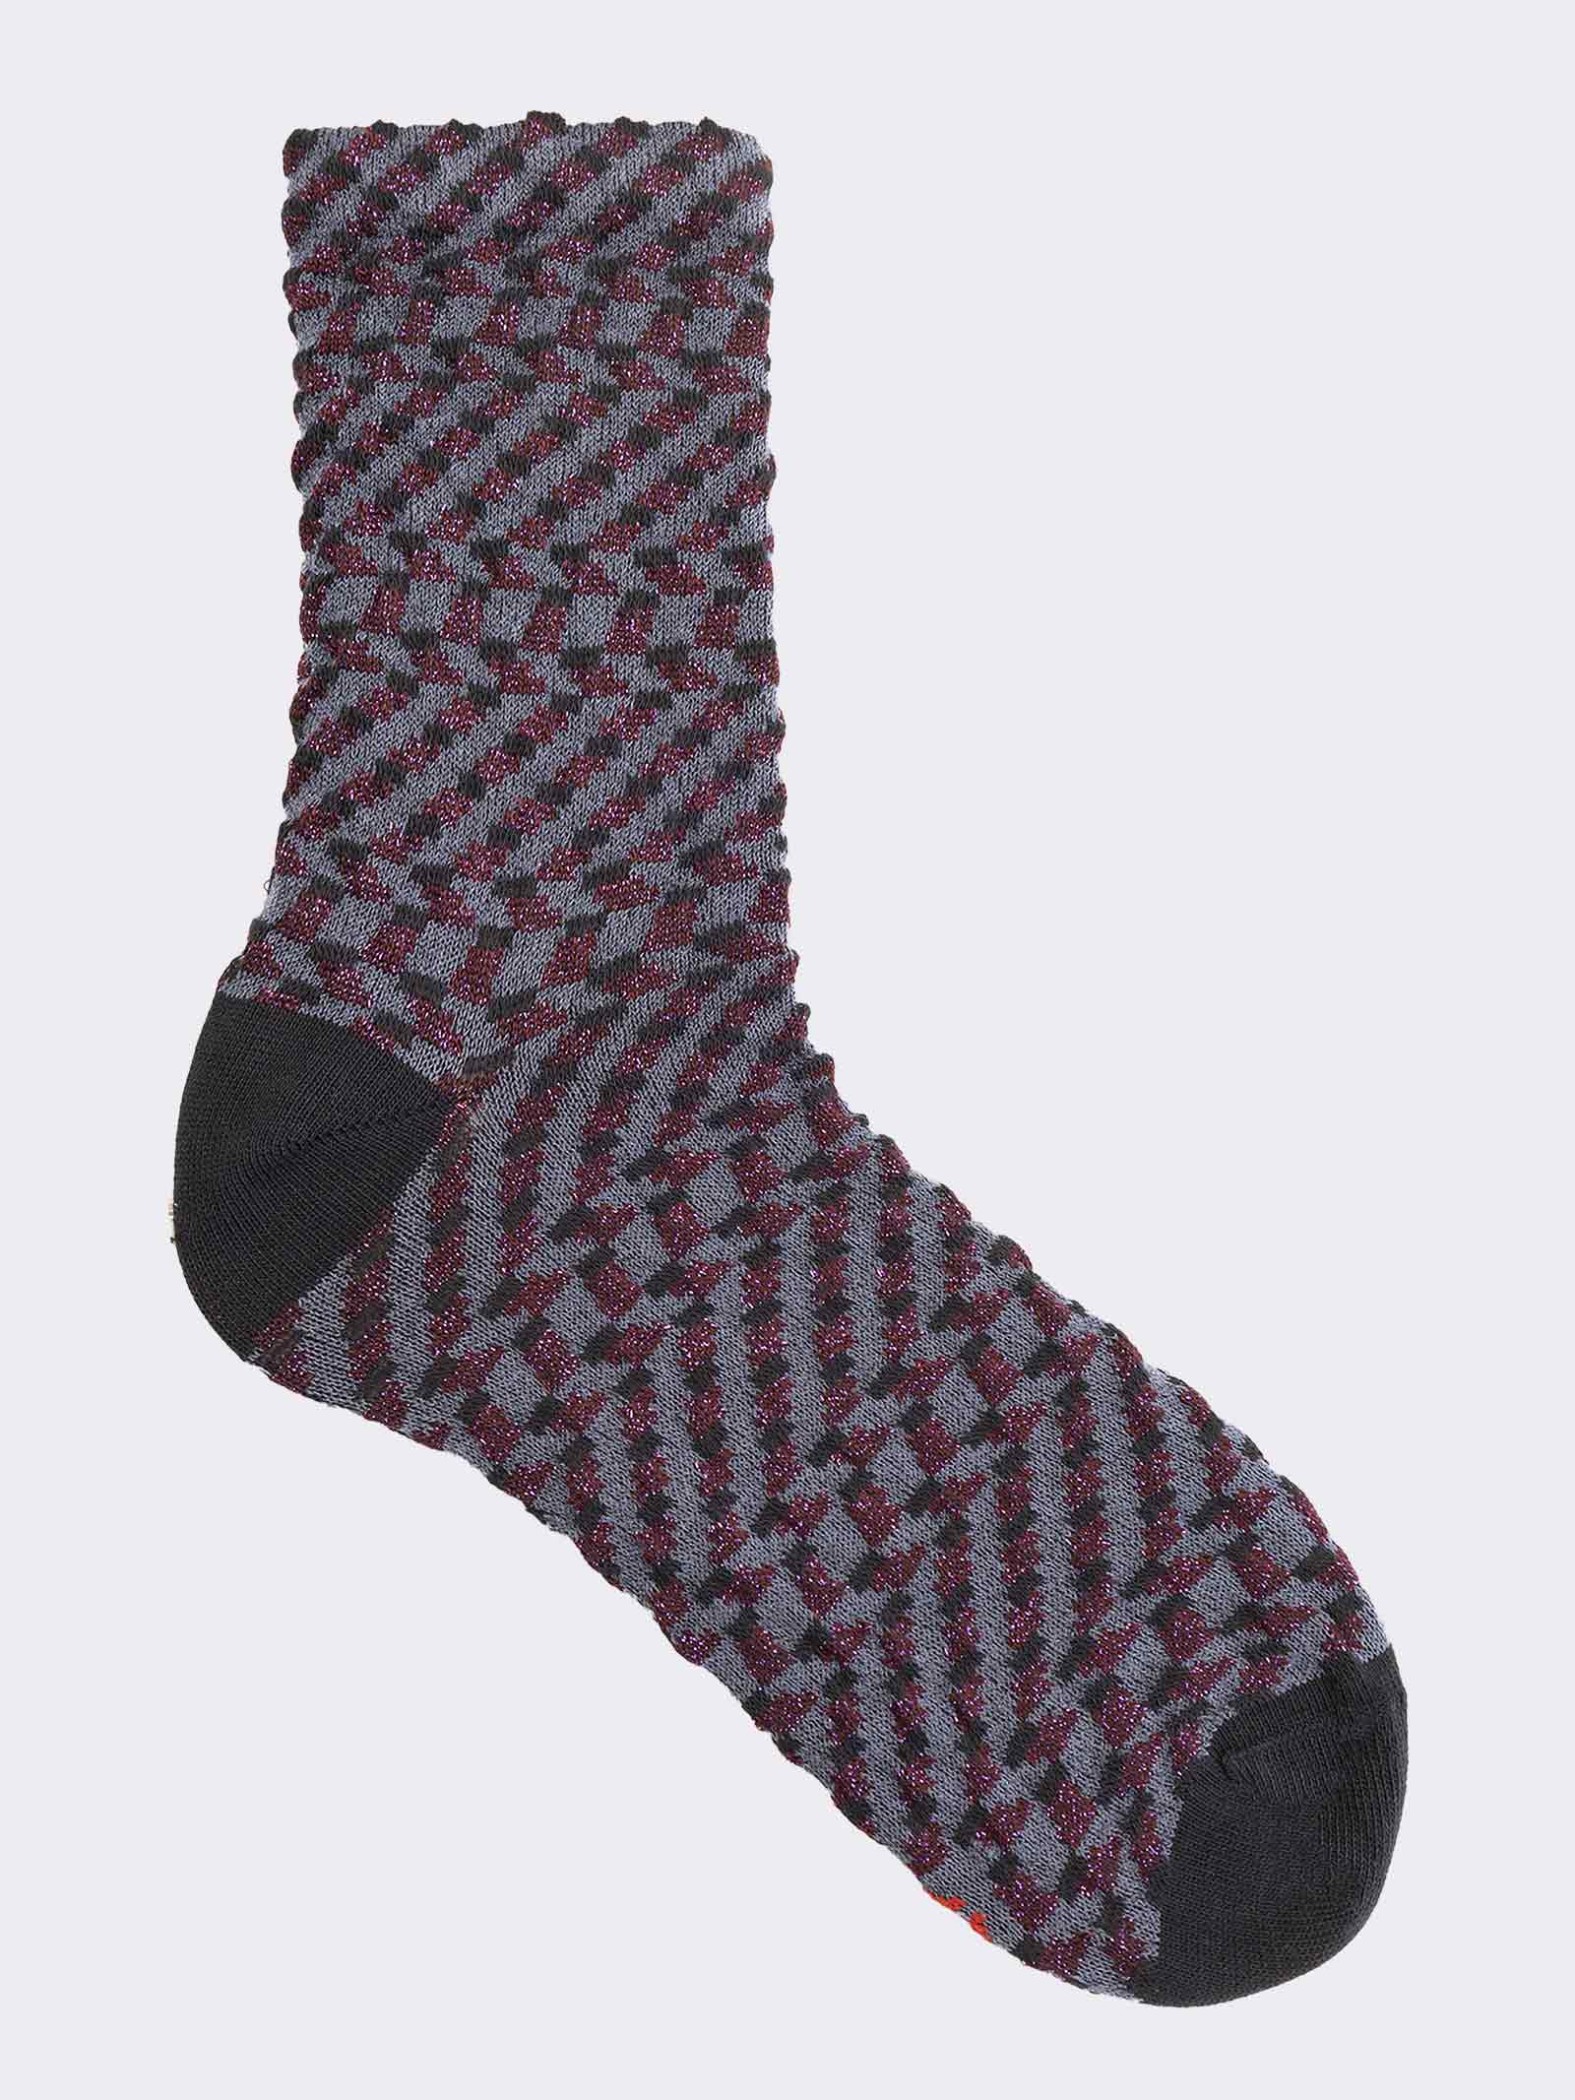 Women's geometric lurex patterned crew socks in warm cotton